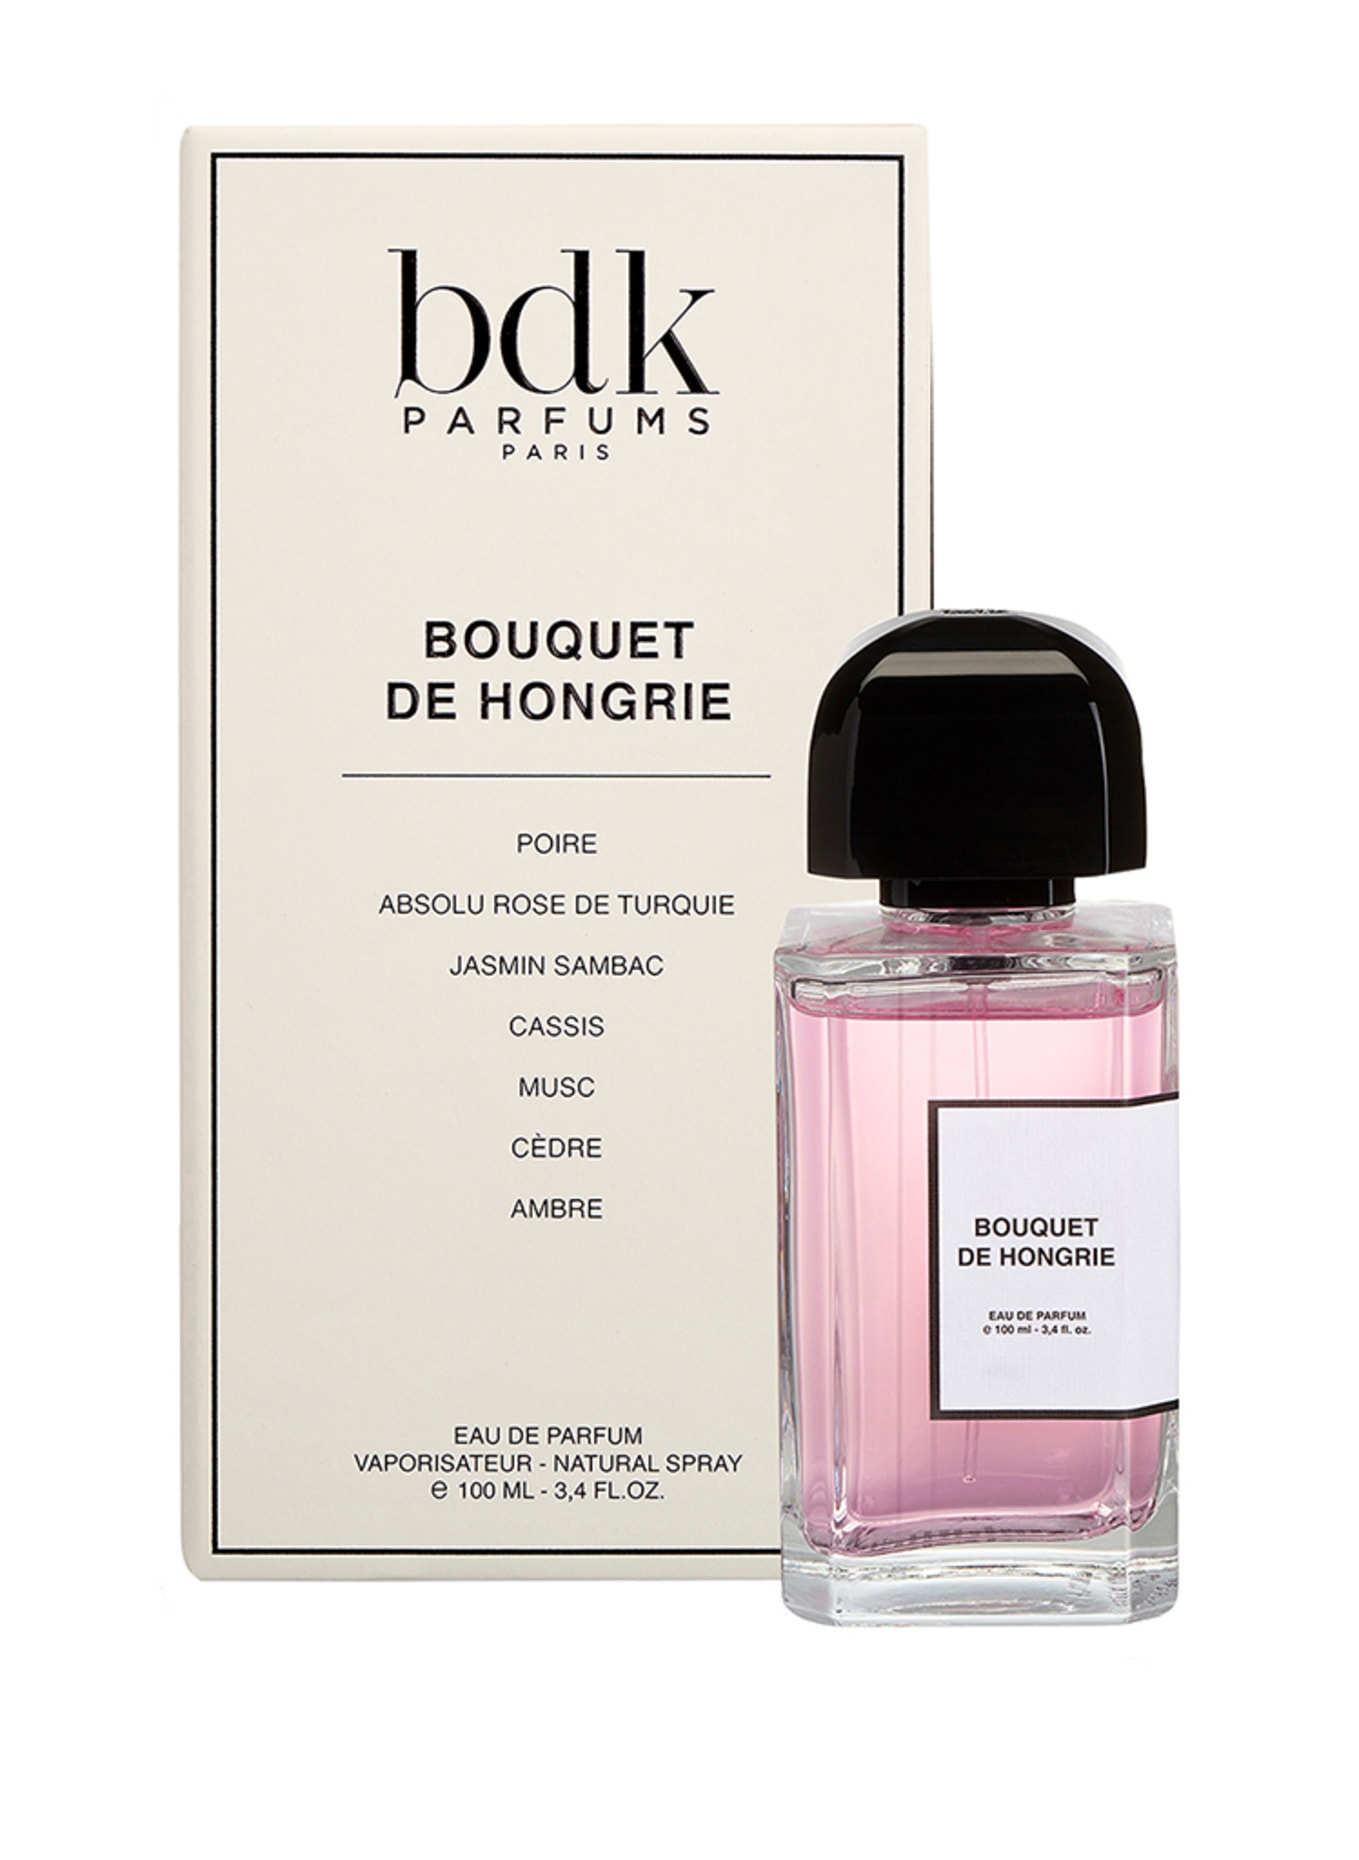 bdk Parfums BOUQUET DE HONGRIE (Obrázek 2)